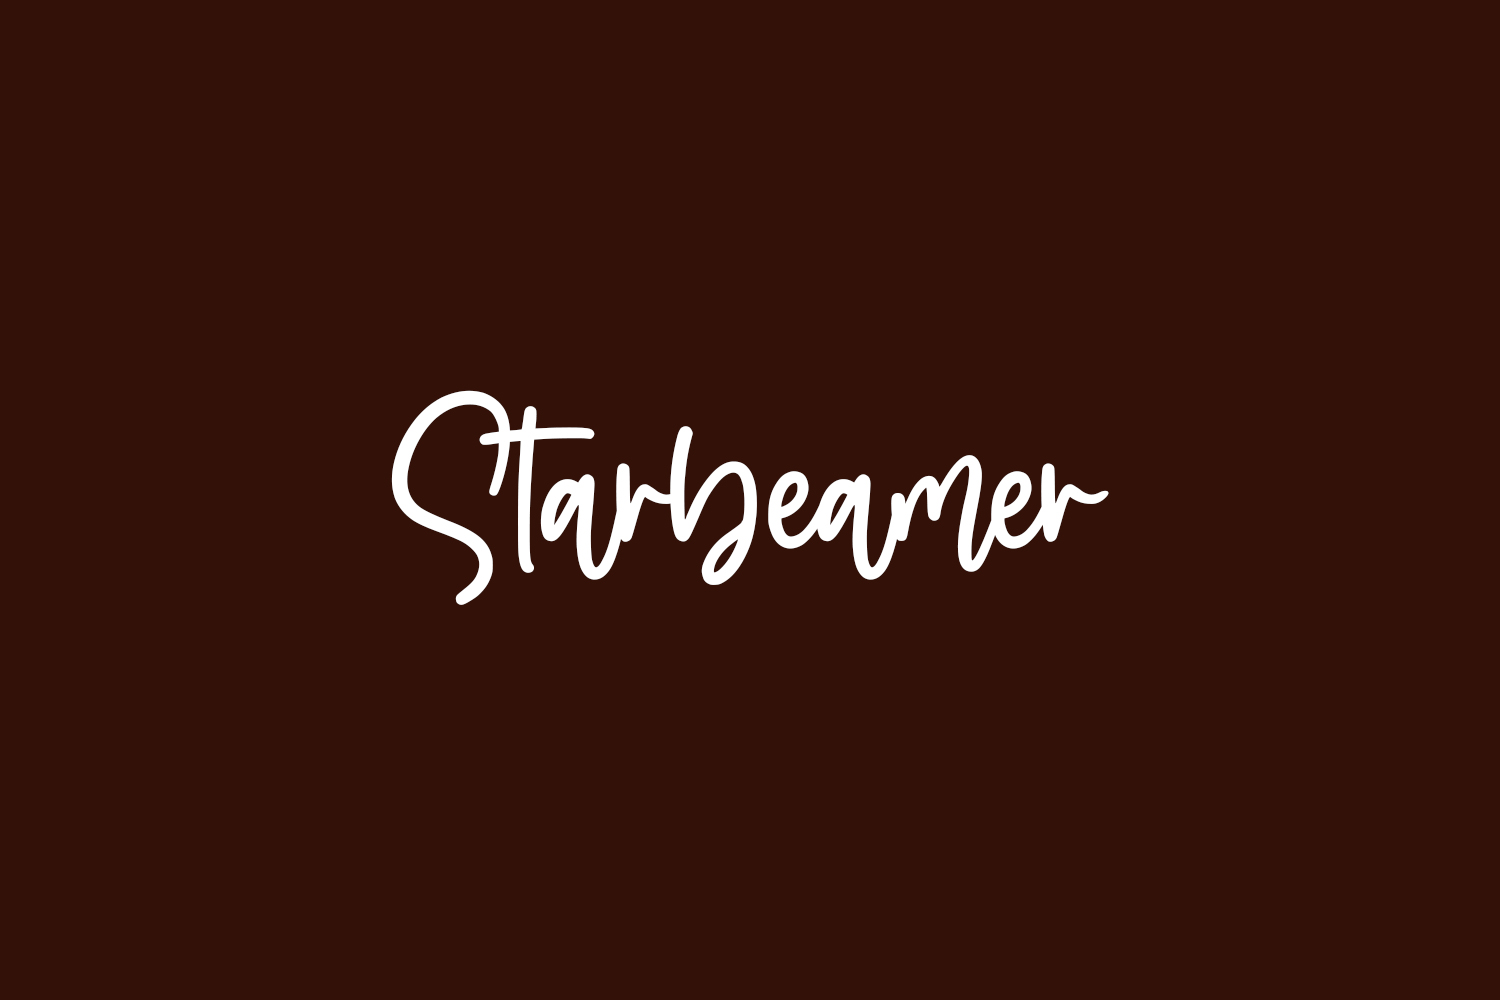 Starbeamer Free Font